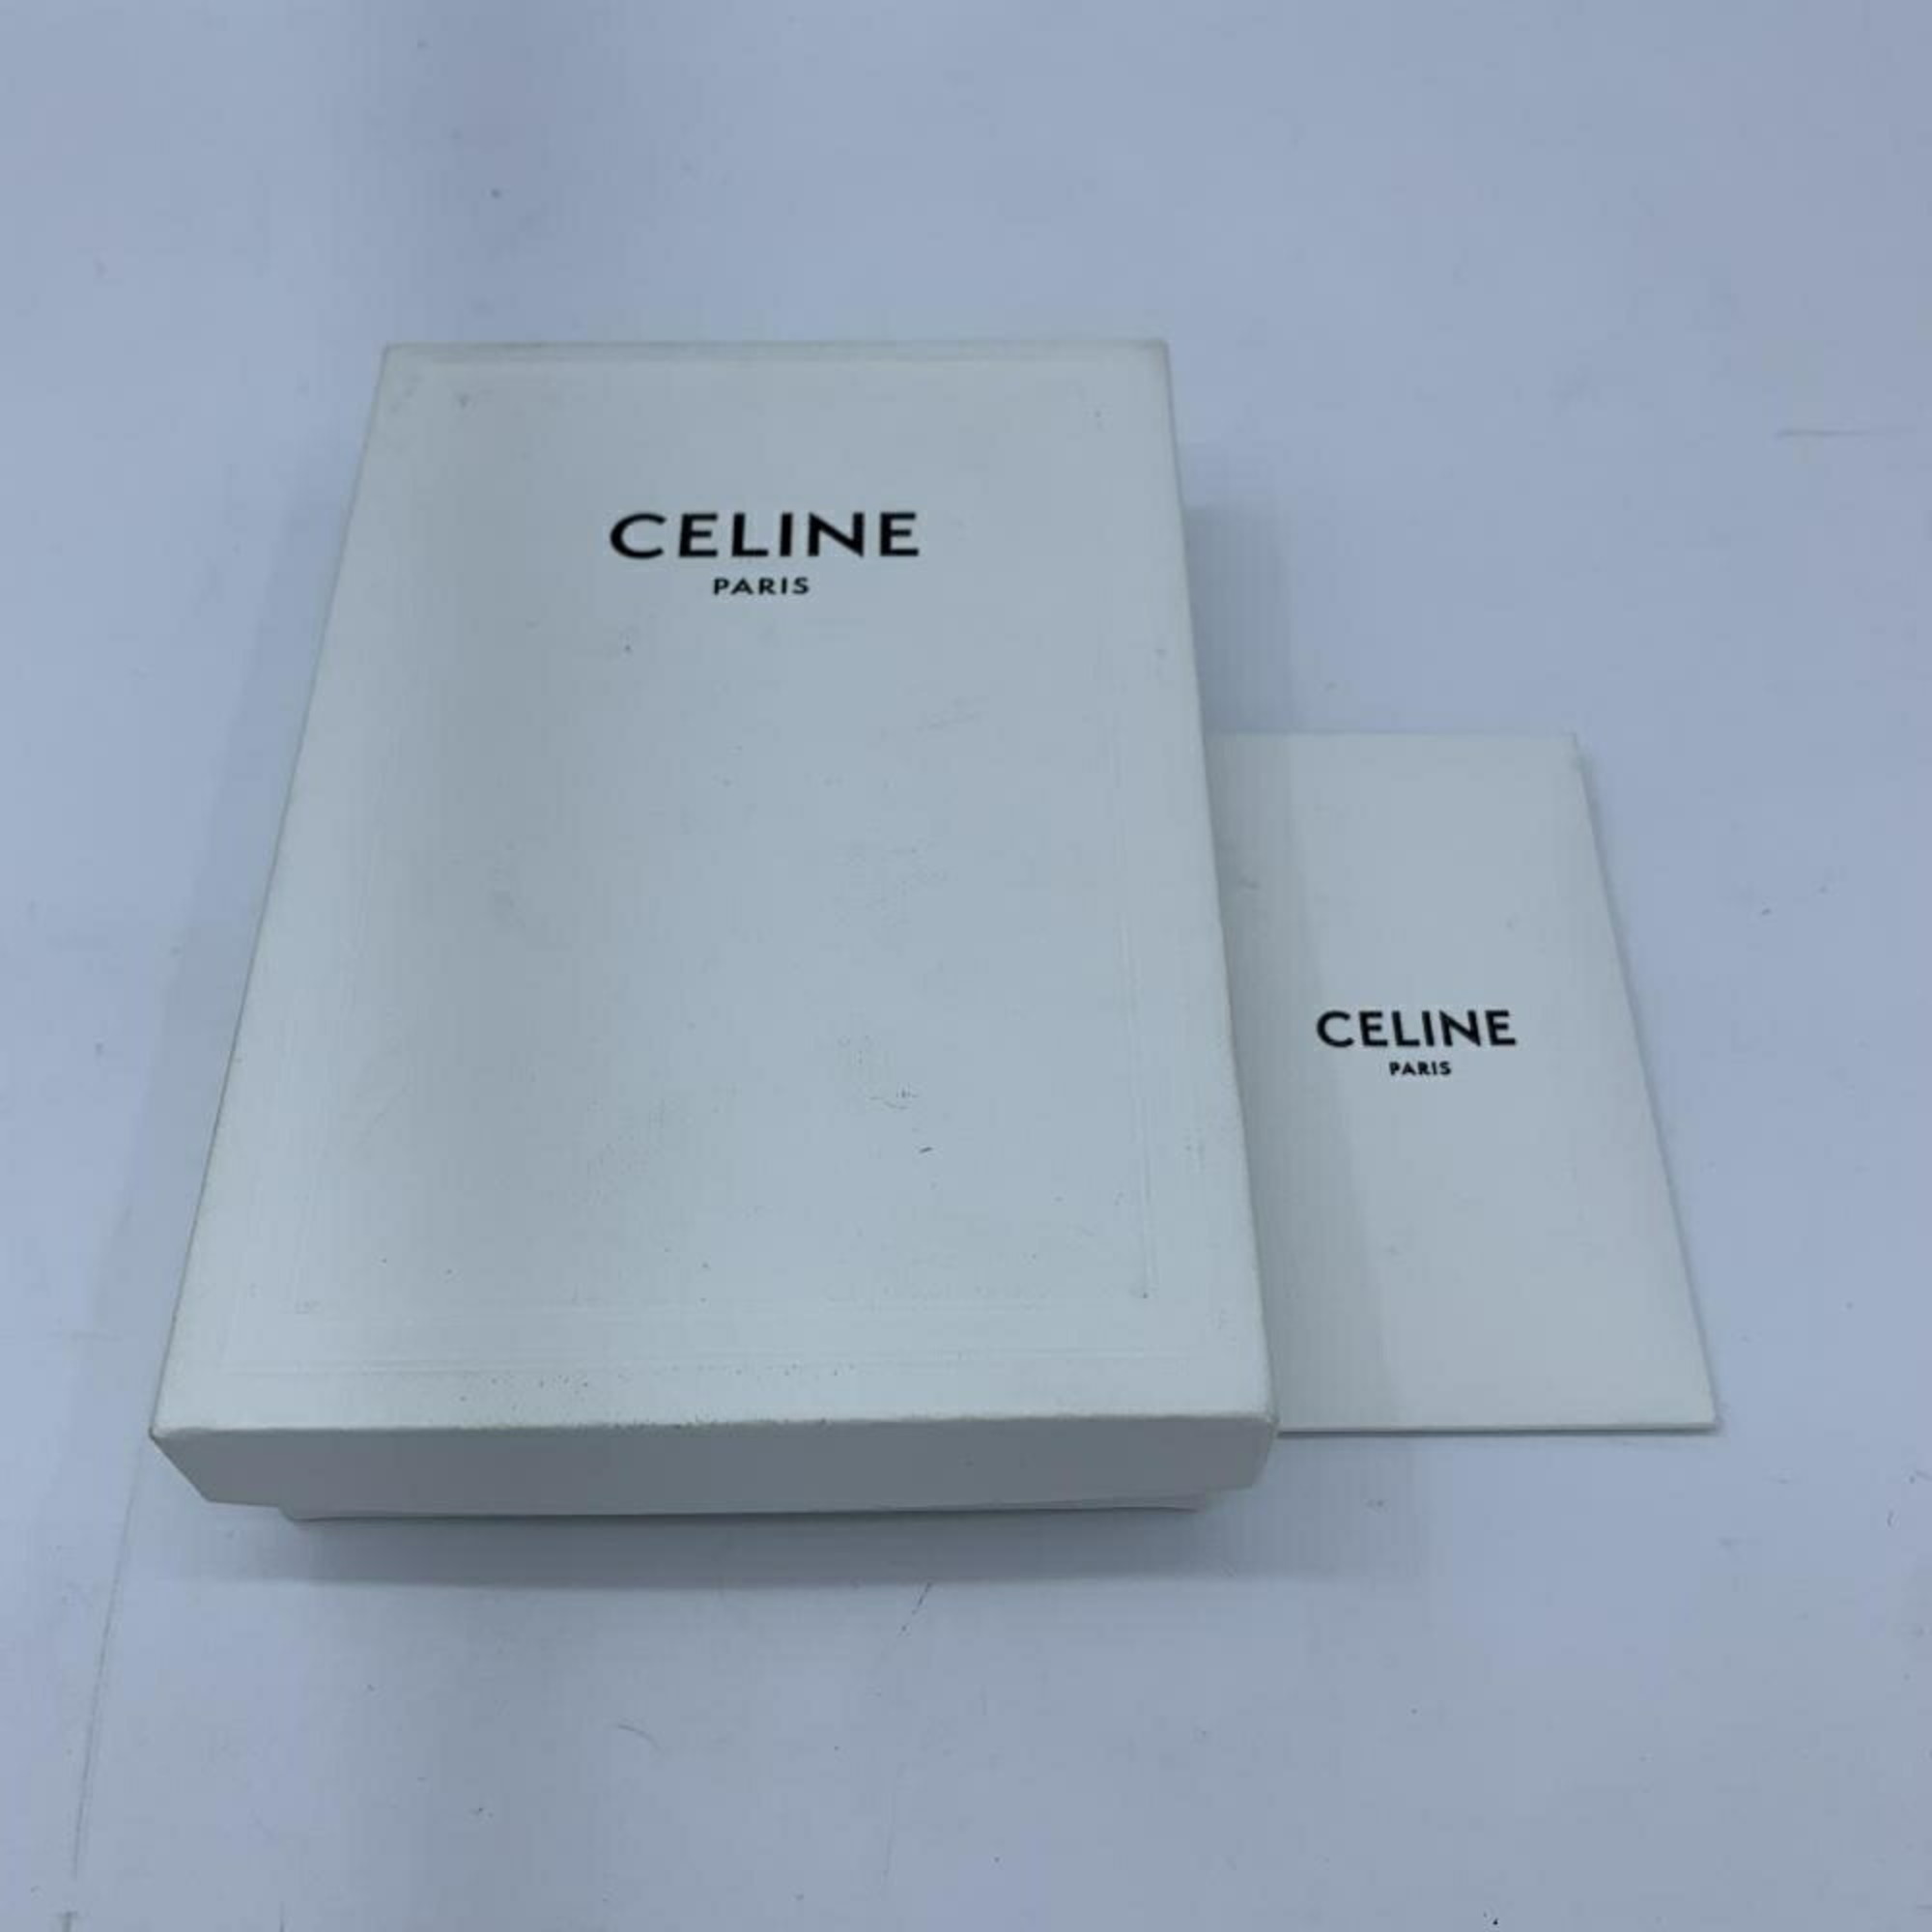 Celine Men's Leather Card Wallet Black